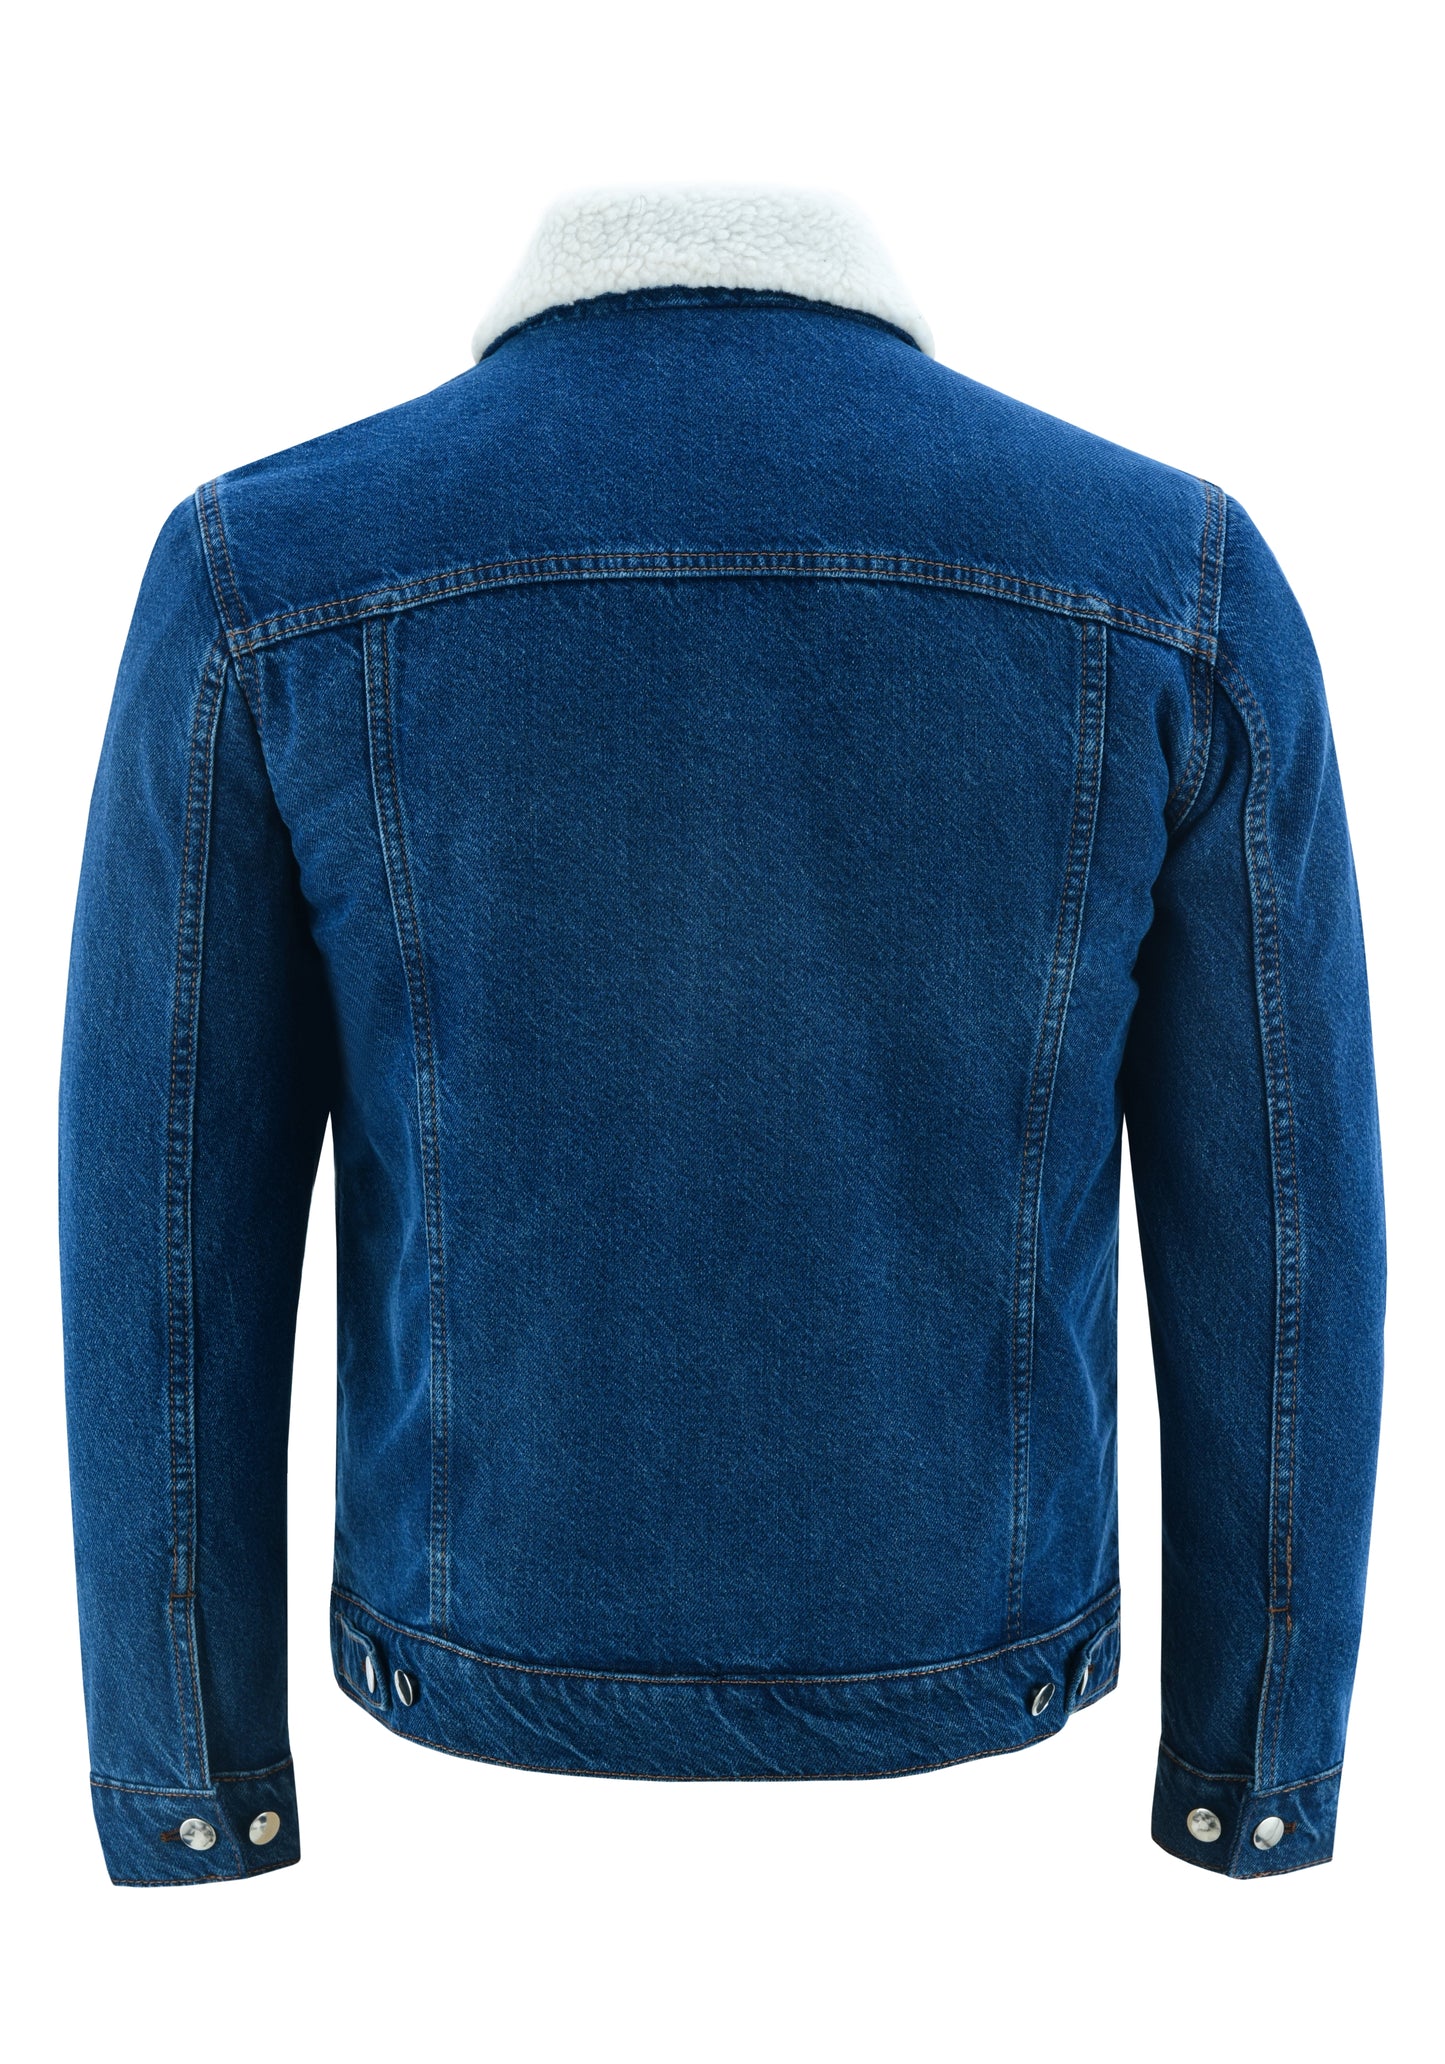 KS101 Blue Denim Fur Jackets Hip-hop Style  Kanvos Sports